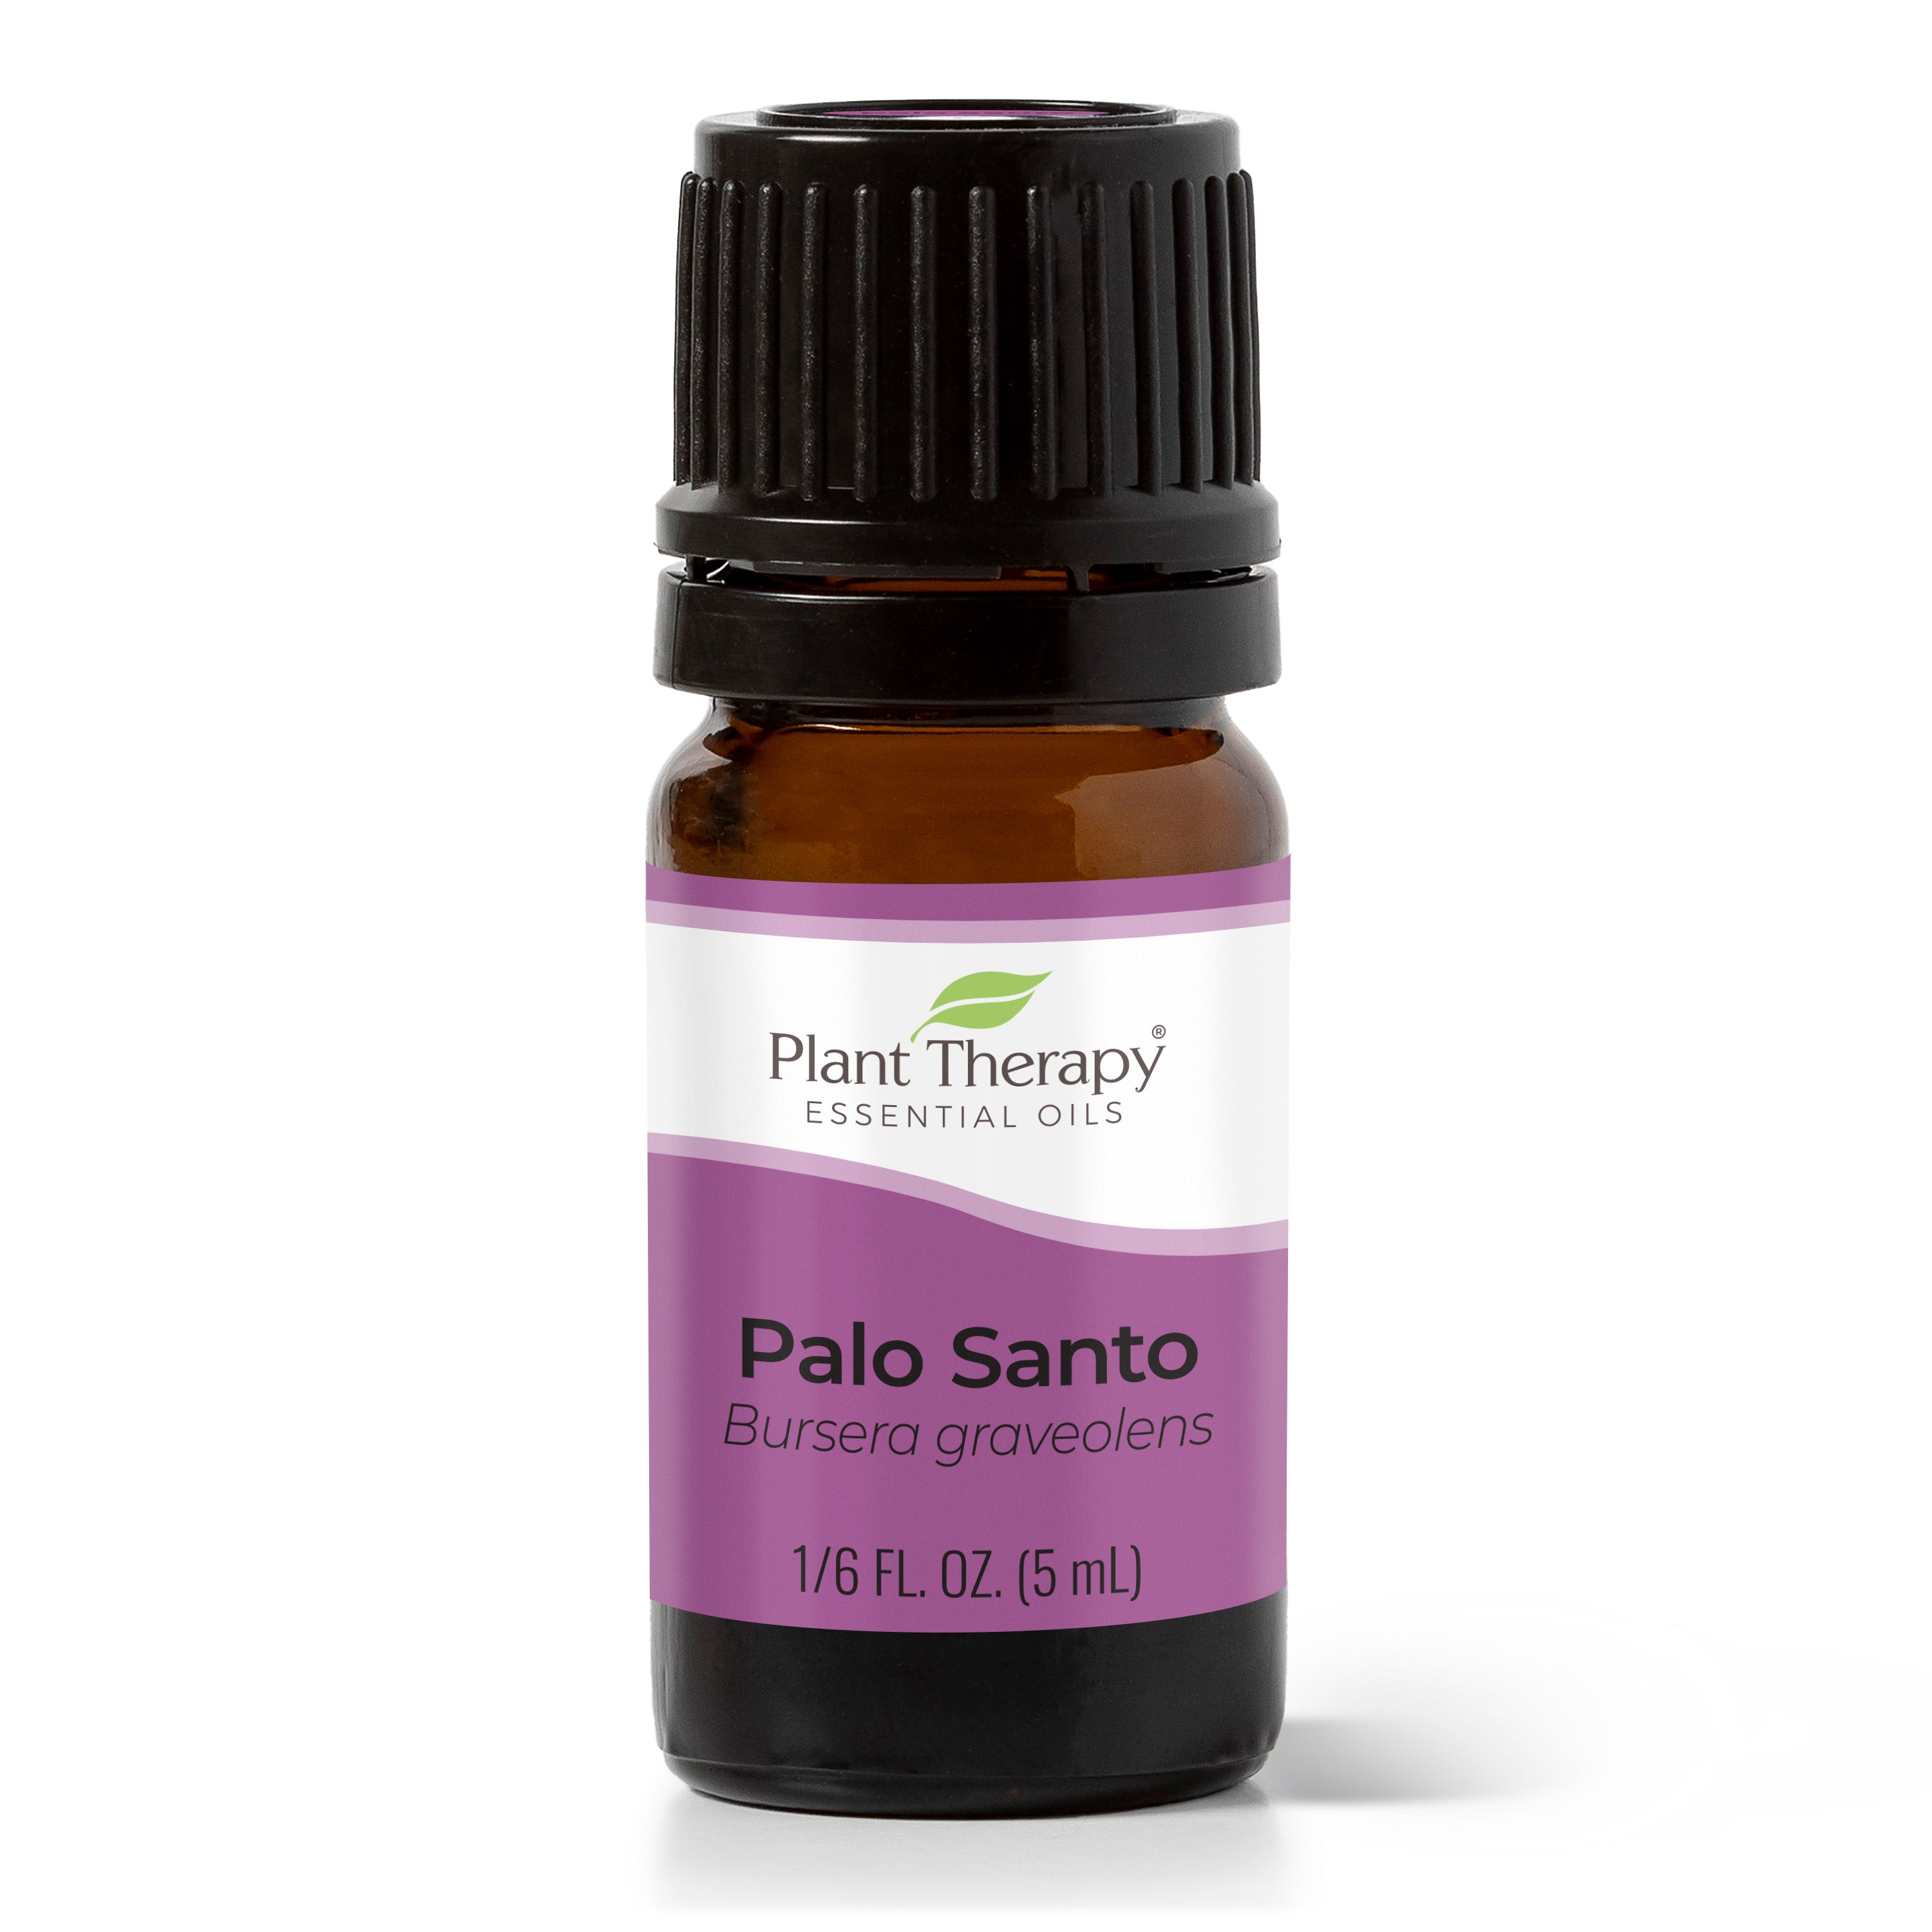 Plant Therapy Palo Santo Essential Oil 5 ml (1/6 oz) 100% Pure, Undiluted, Therapeutic Grade.